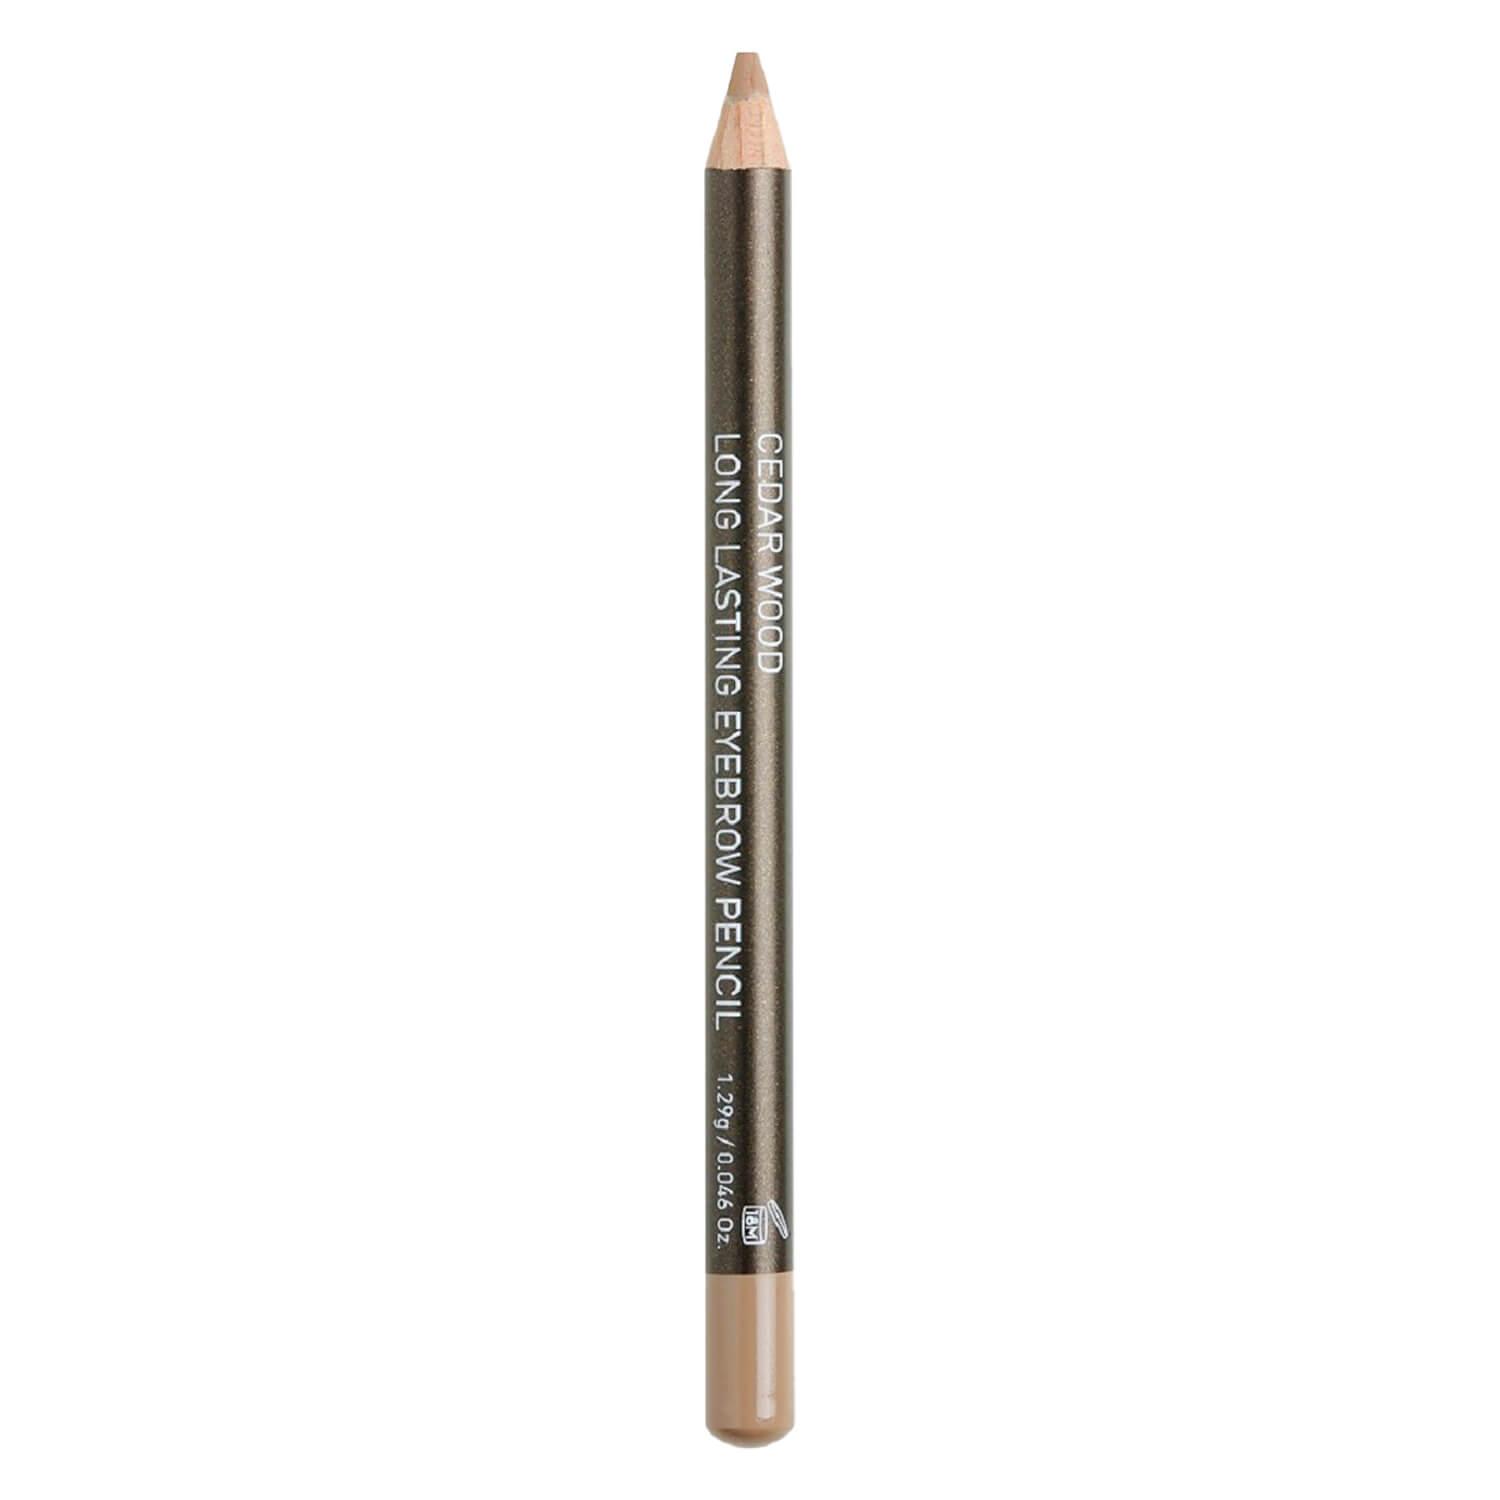 Korres Brows - Cedar Eyebrow Pencil No 3 Light Shade